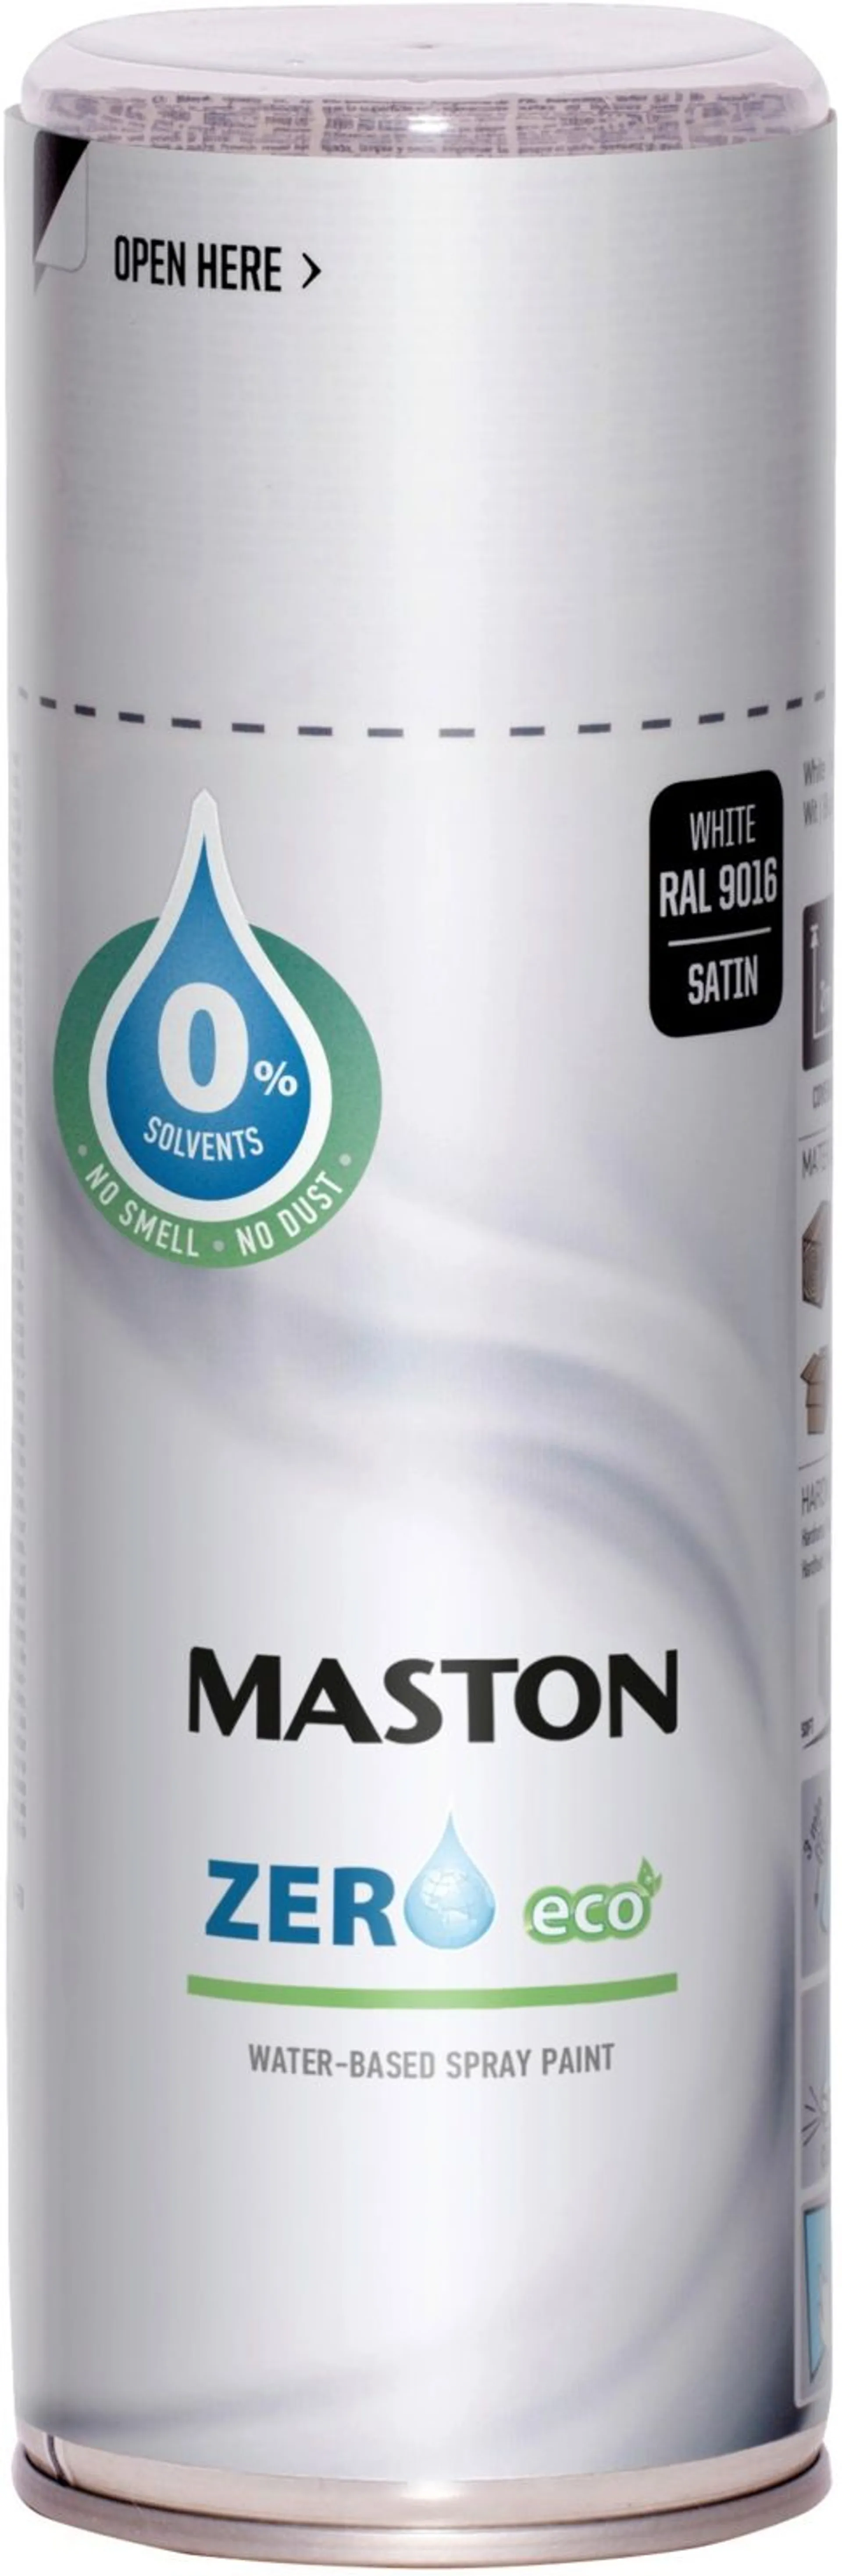 Maston spraymaali Zero valkoinen 400ml